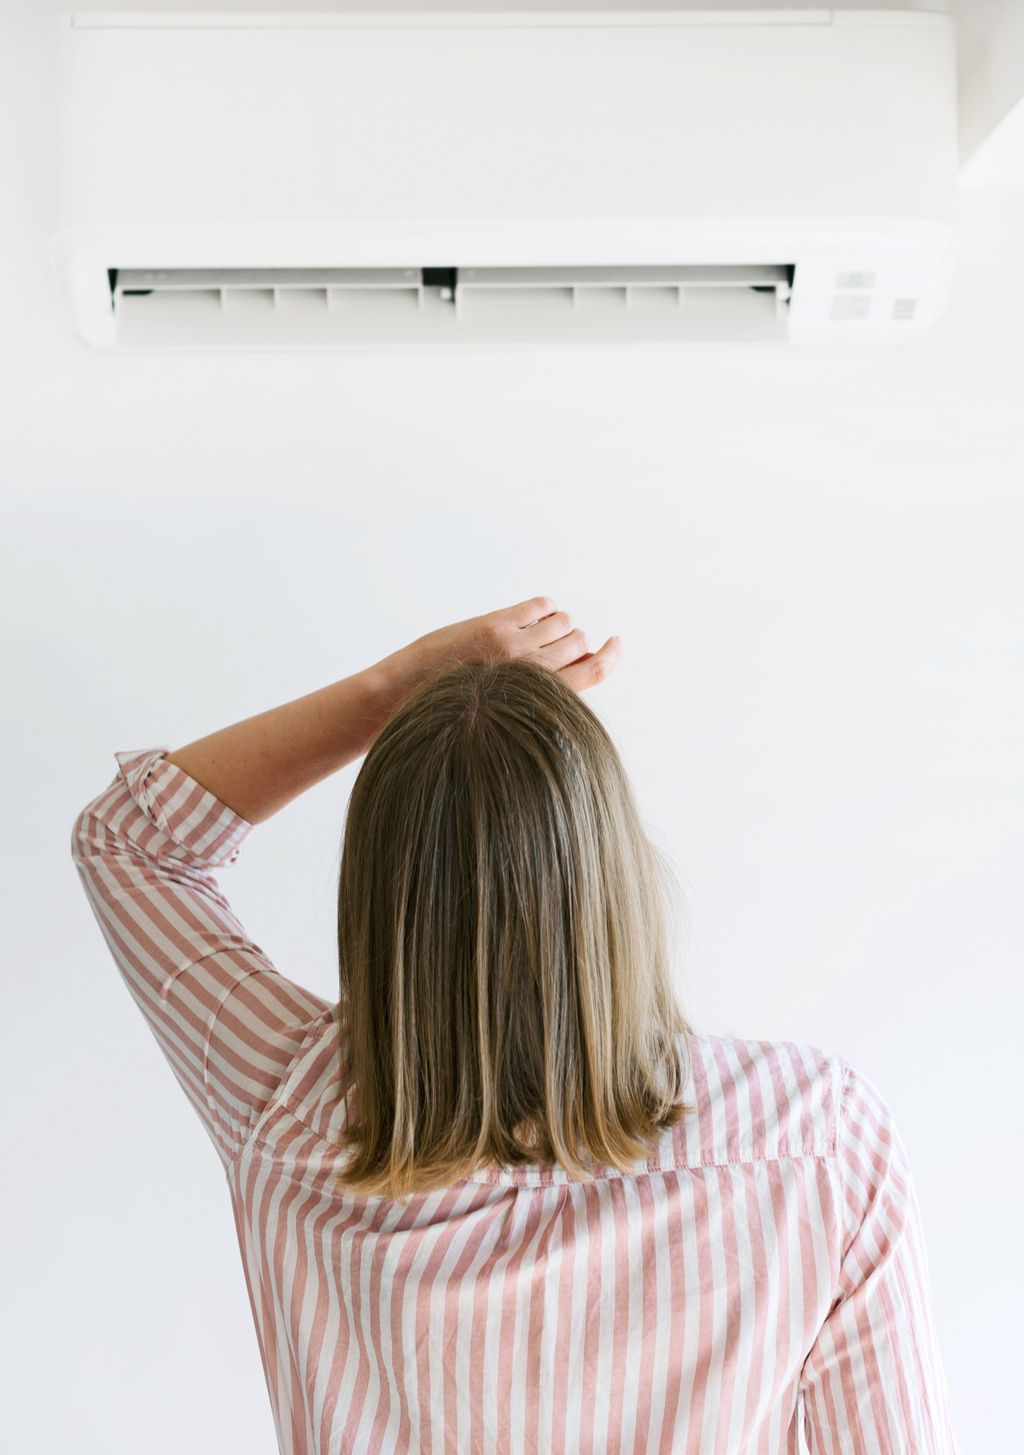 Vrouw met airconditioner manieren om de rekening van de airconditioning te verlagen